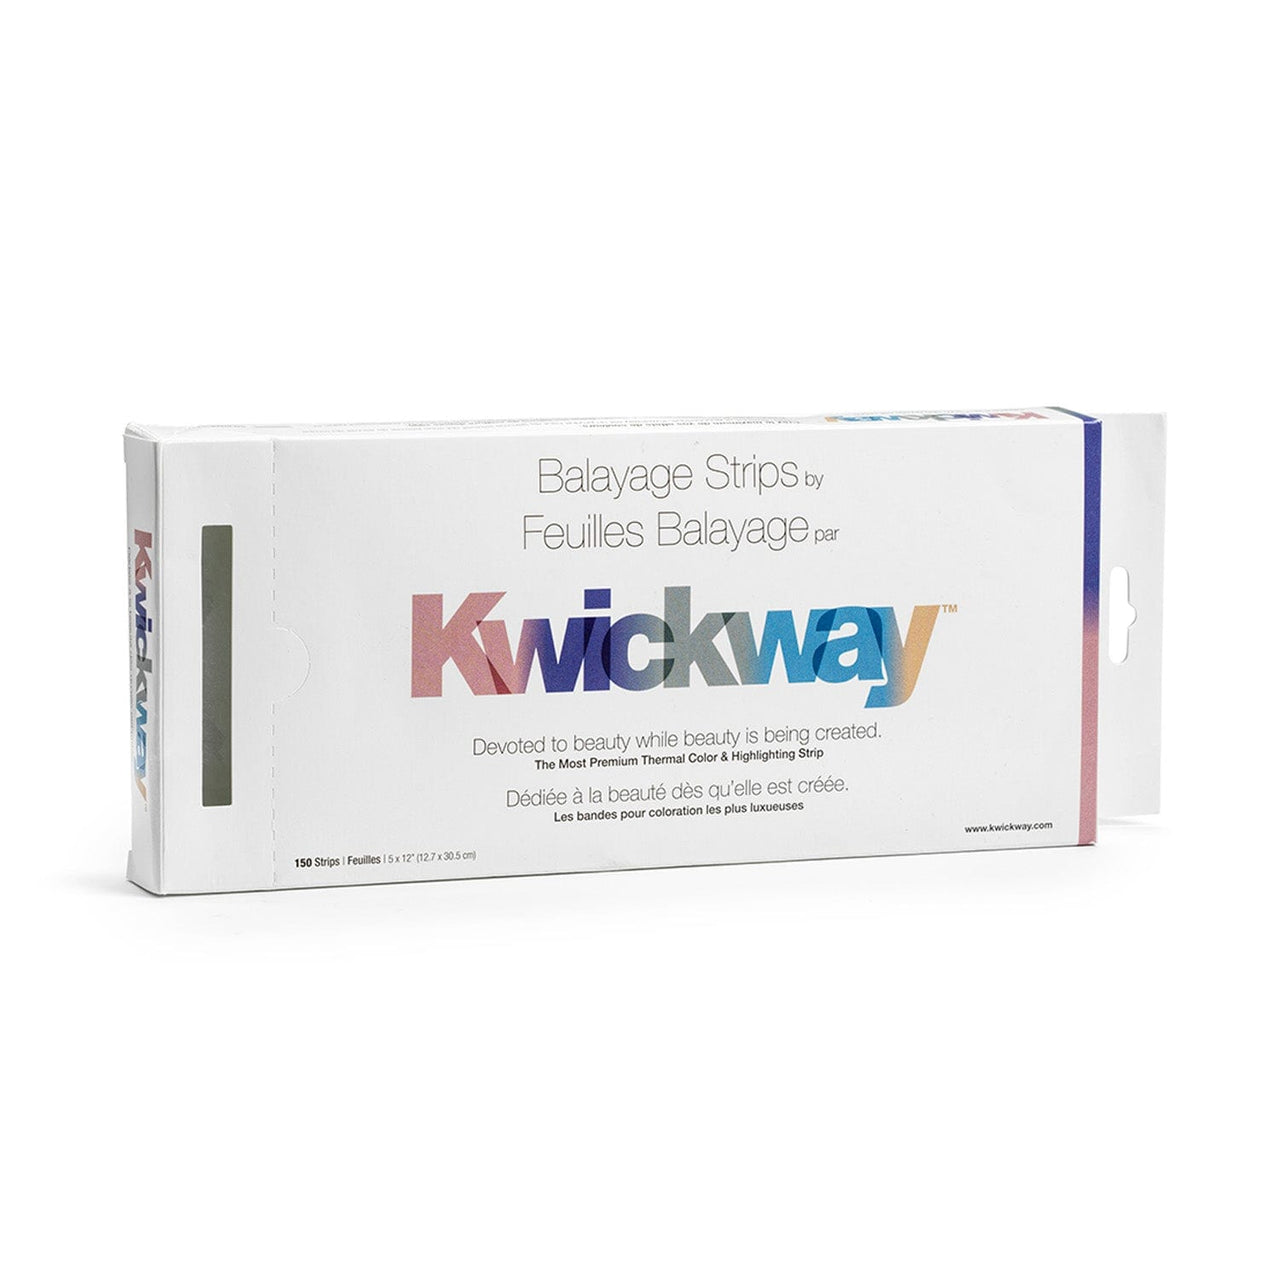 KWICKWAY_Kwickway Balayage Strips 12.7x25.4cm / 5"x10" - 150 sheets_Cosmetic World